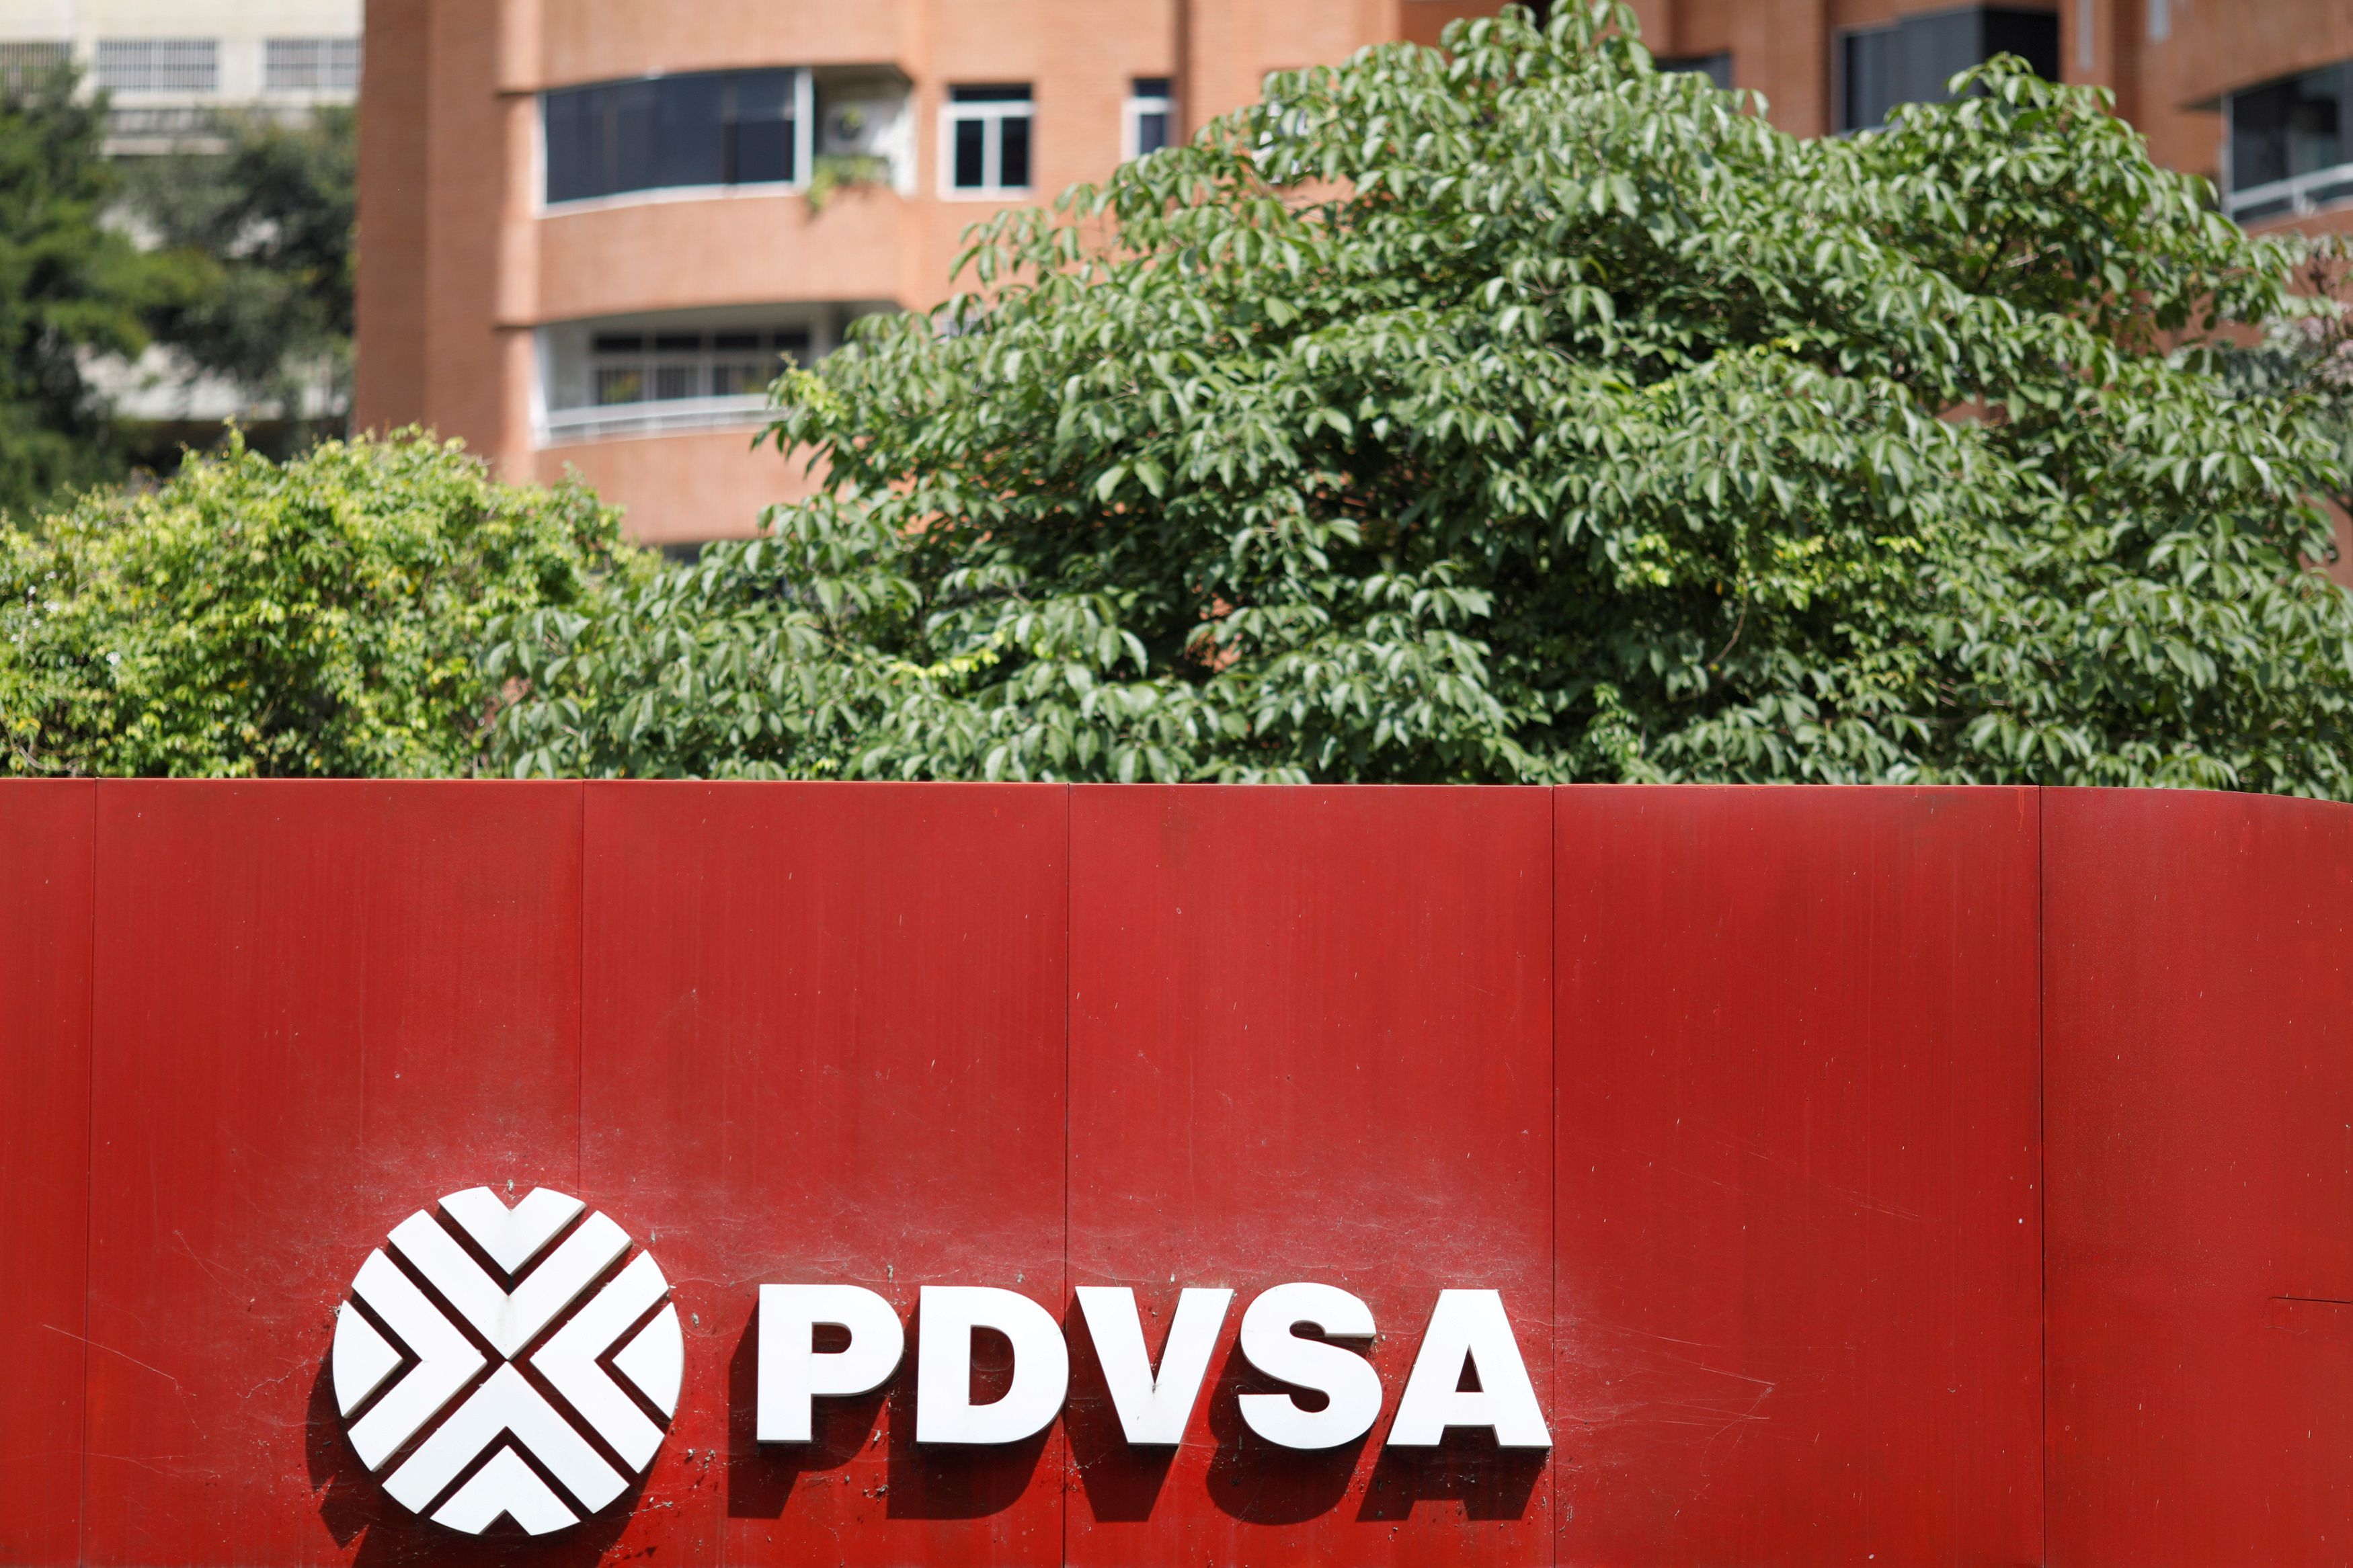 Junta Administradora ad hoc de Pdvsa anunció contratación de JP Morgan